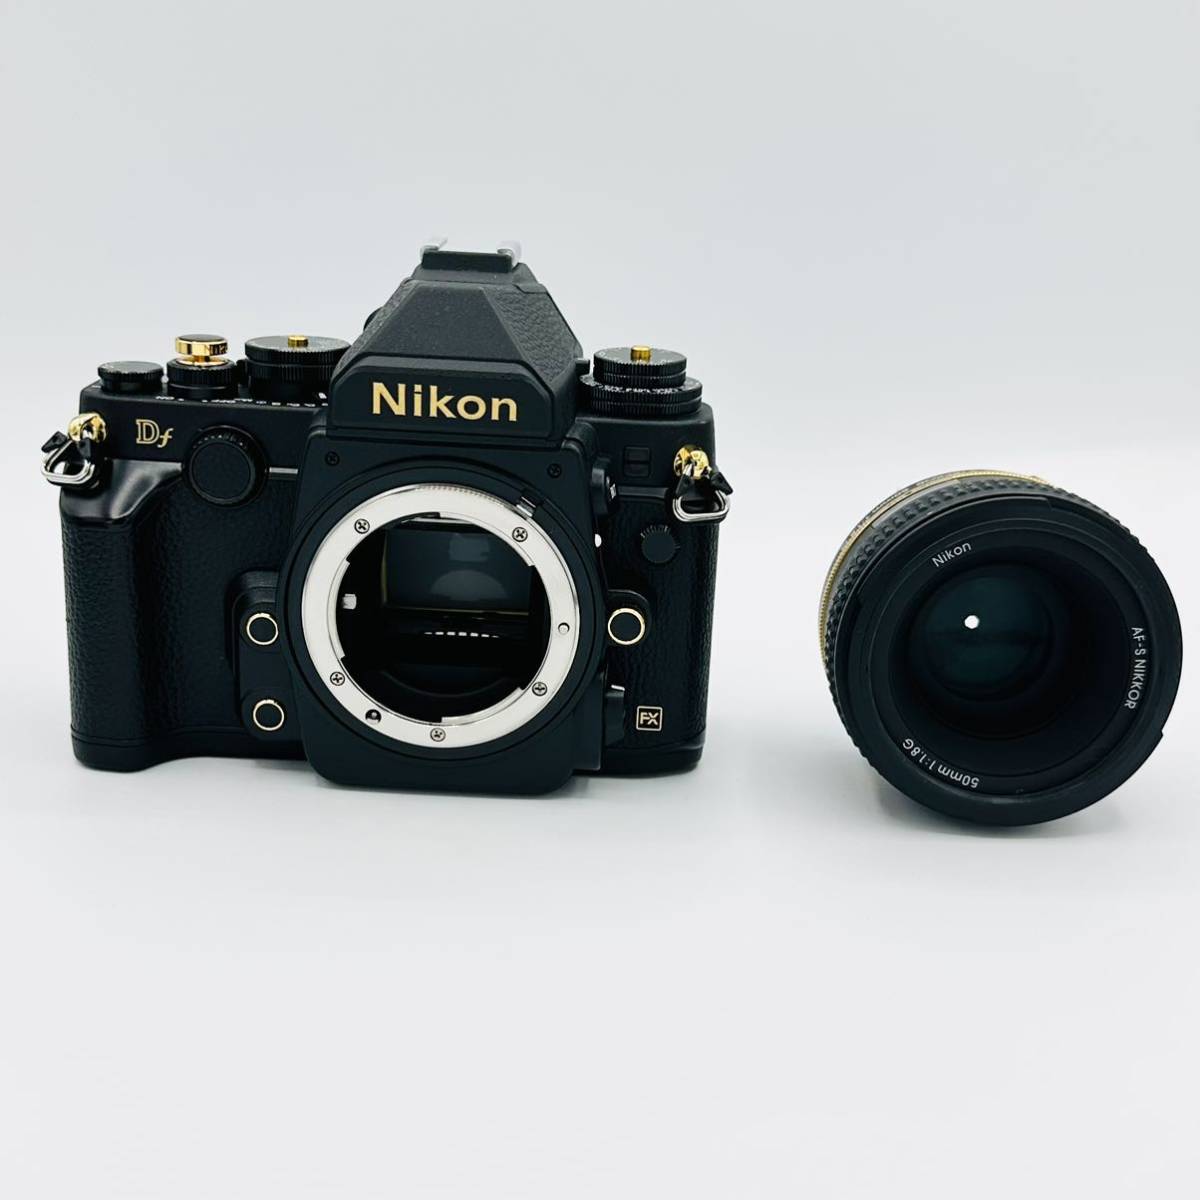 [ почти новый 4003 Schott редкость ]Nikon цифровой однообъективный зеркальный камера Df черный 50mm f/1.8G Special Gold Edition линзы комплект 